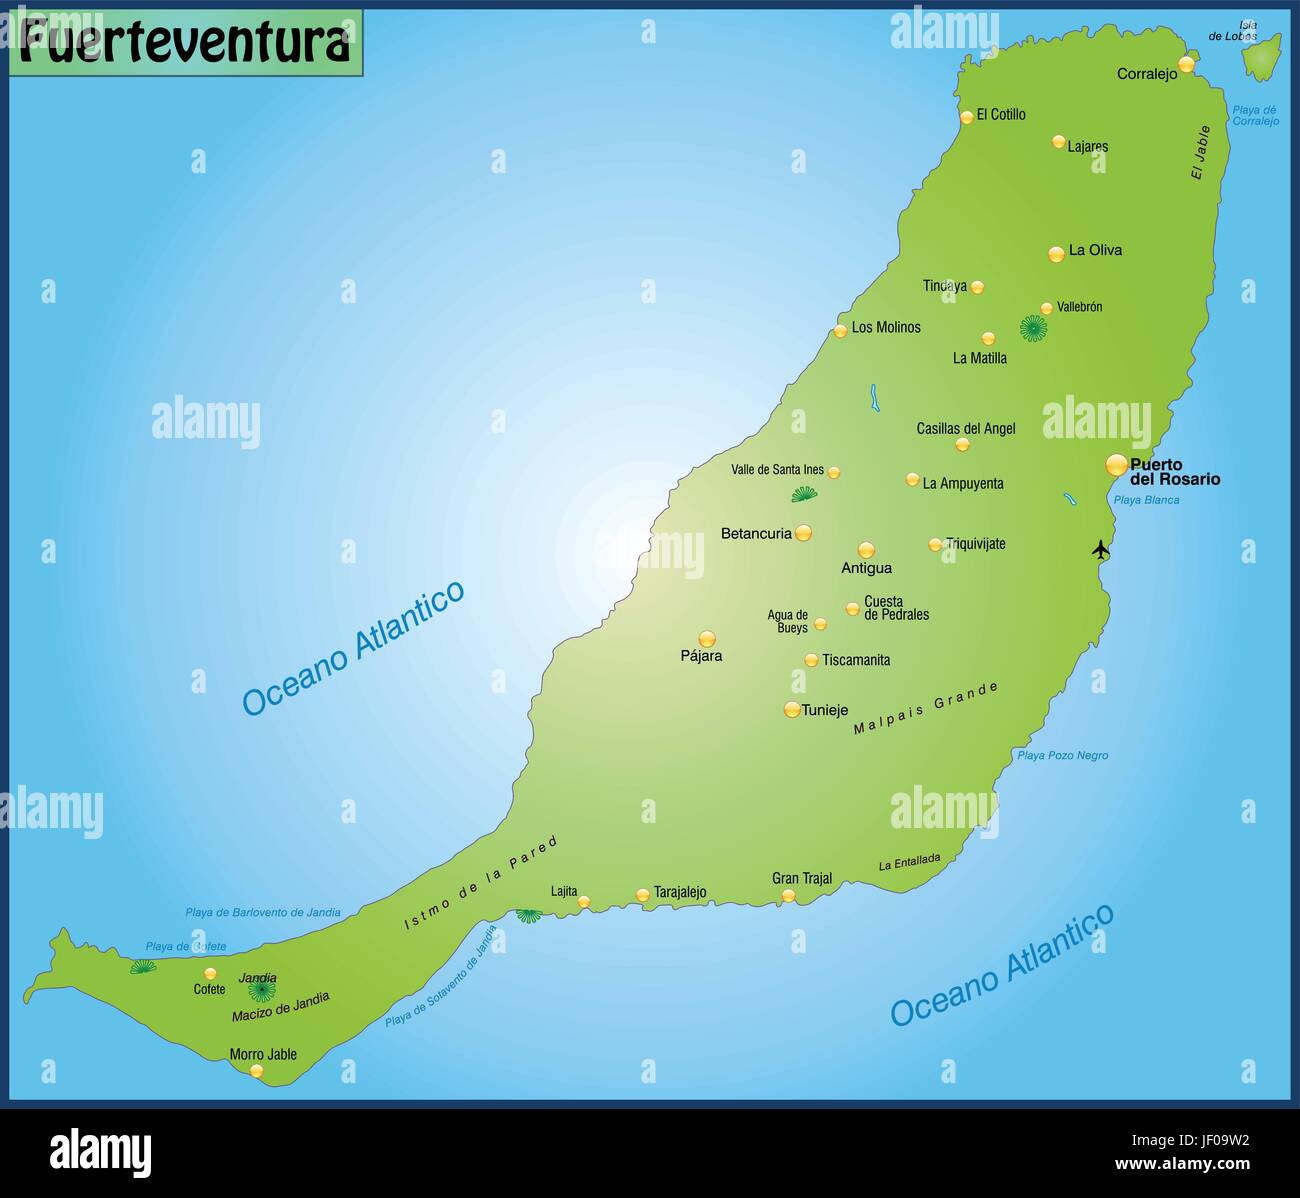 La carte de fuerteventura comme une carte d'aperçu en vert Illustration de Vecteur